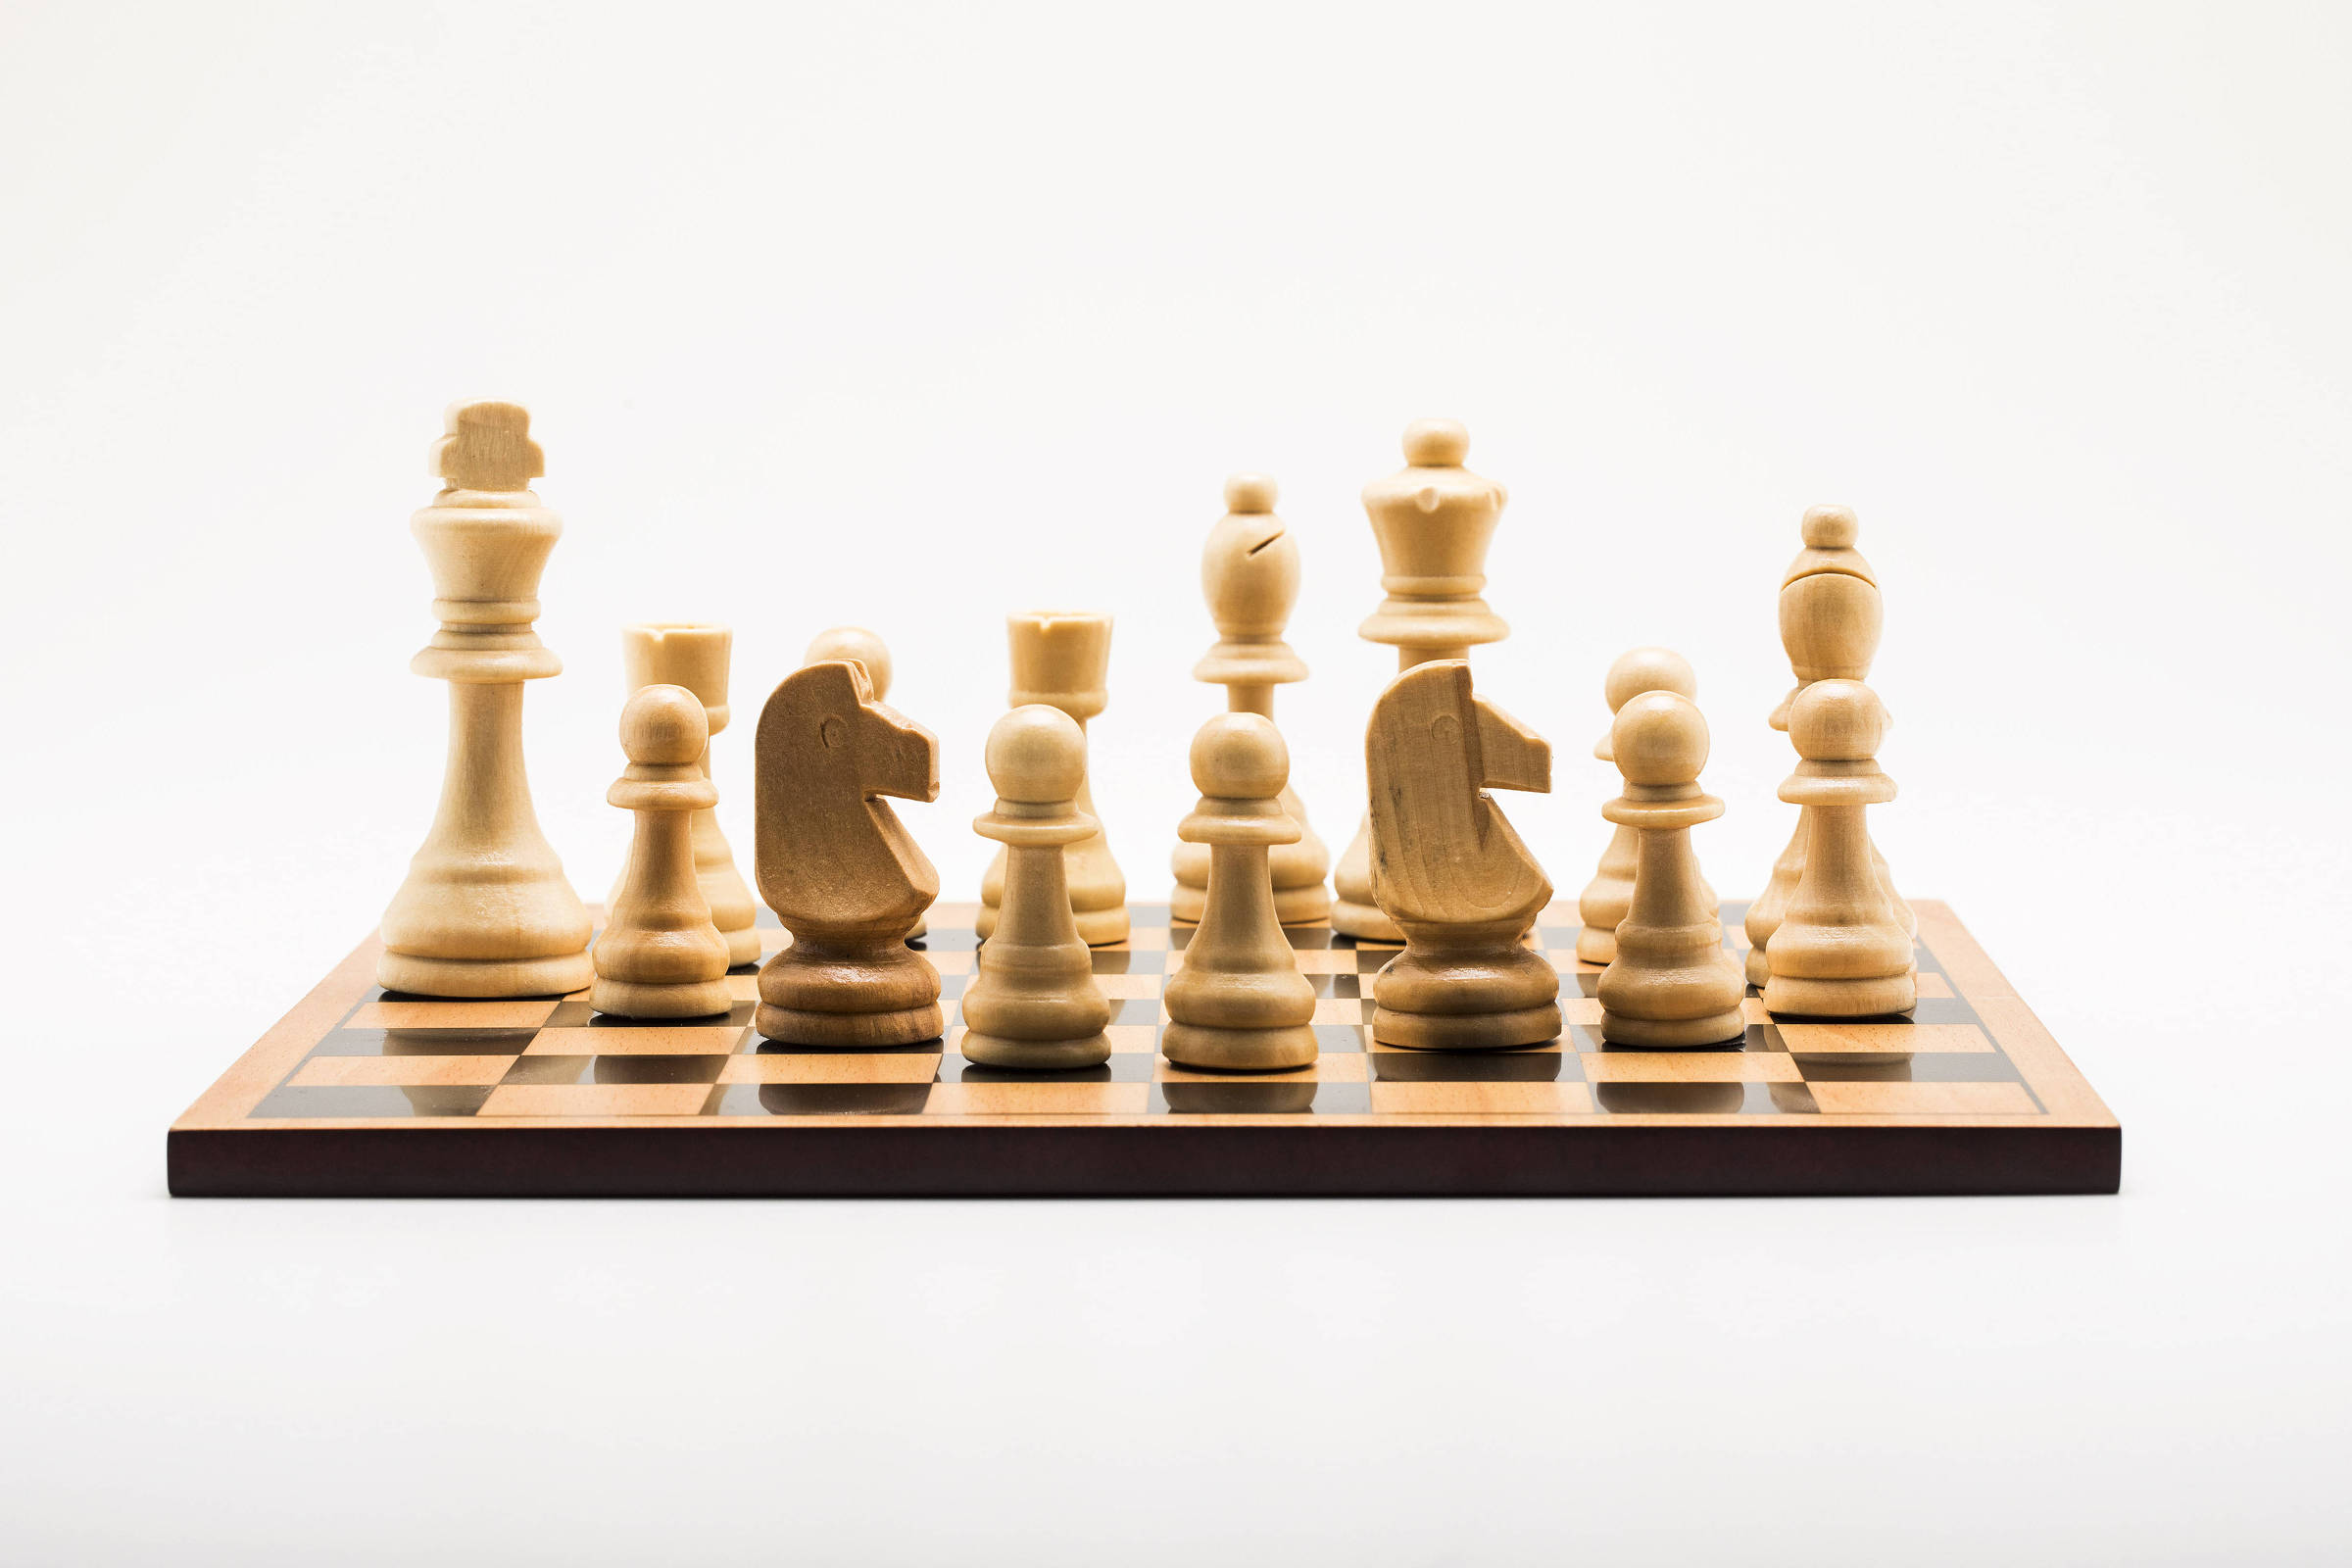 O xadrez realmente ajuda o cérebro? O que dizem os estudos científicos